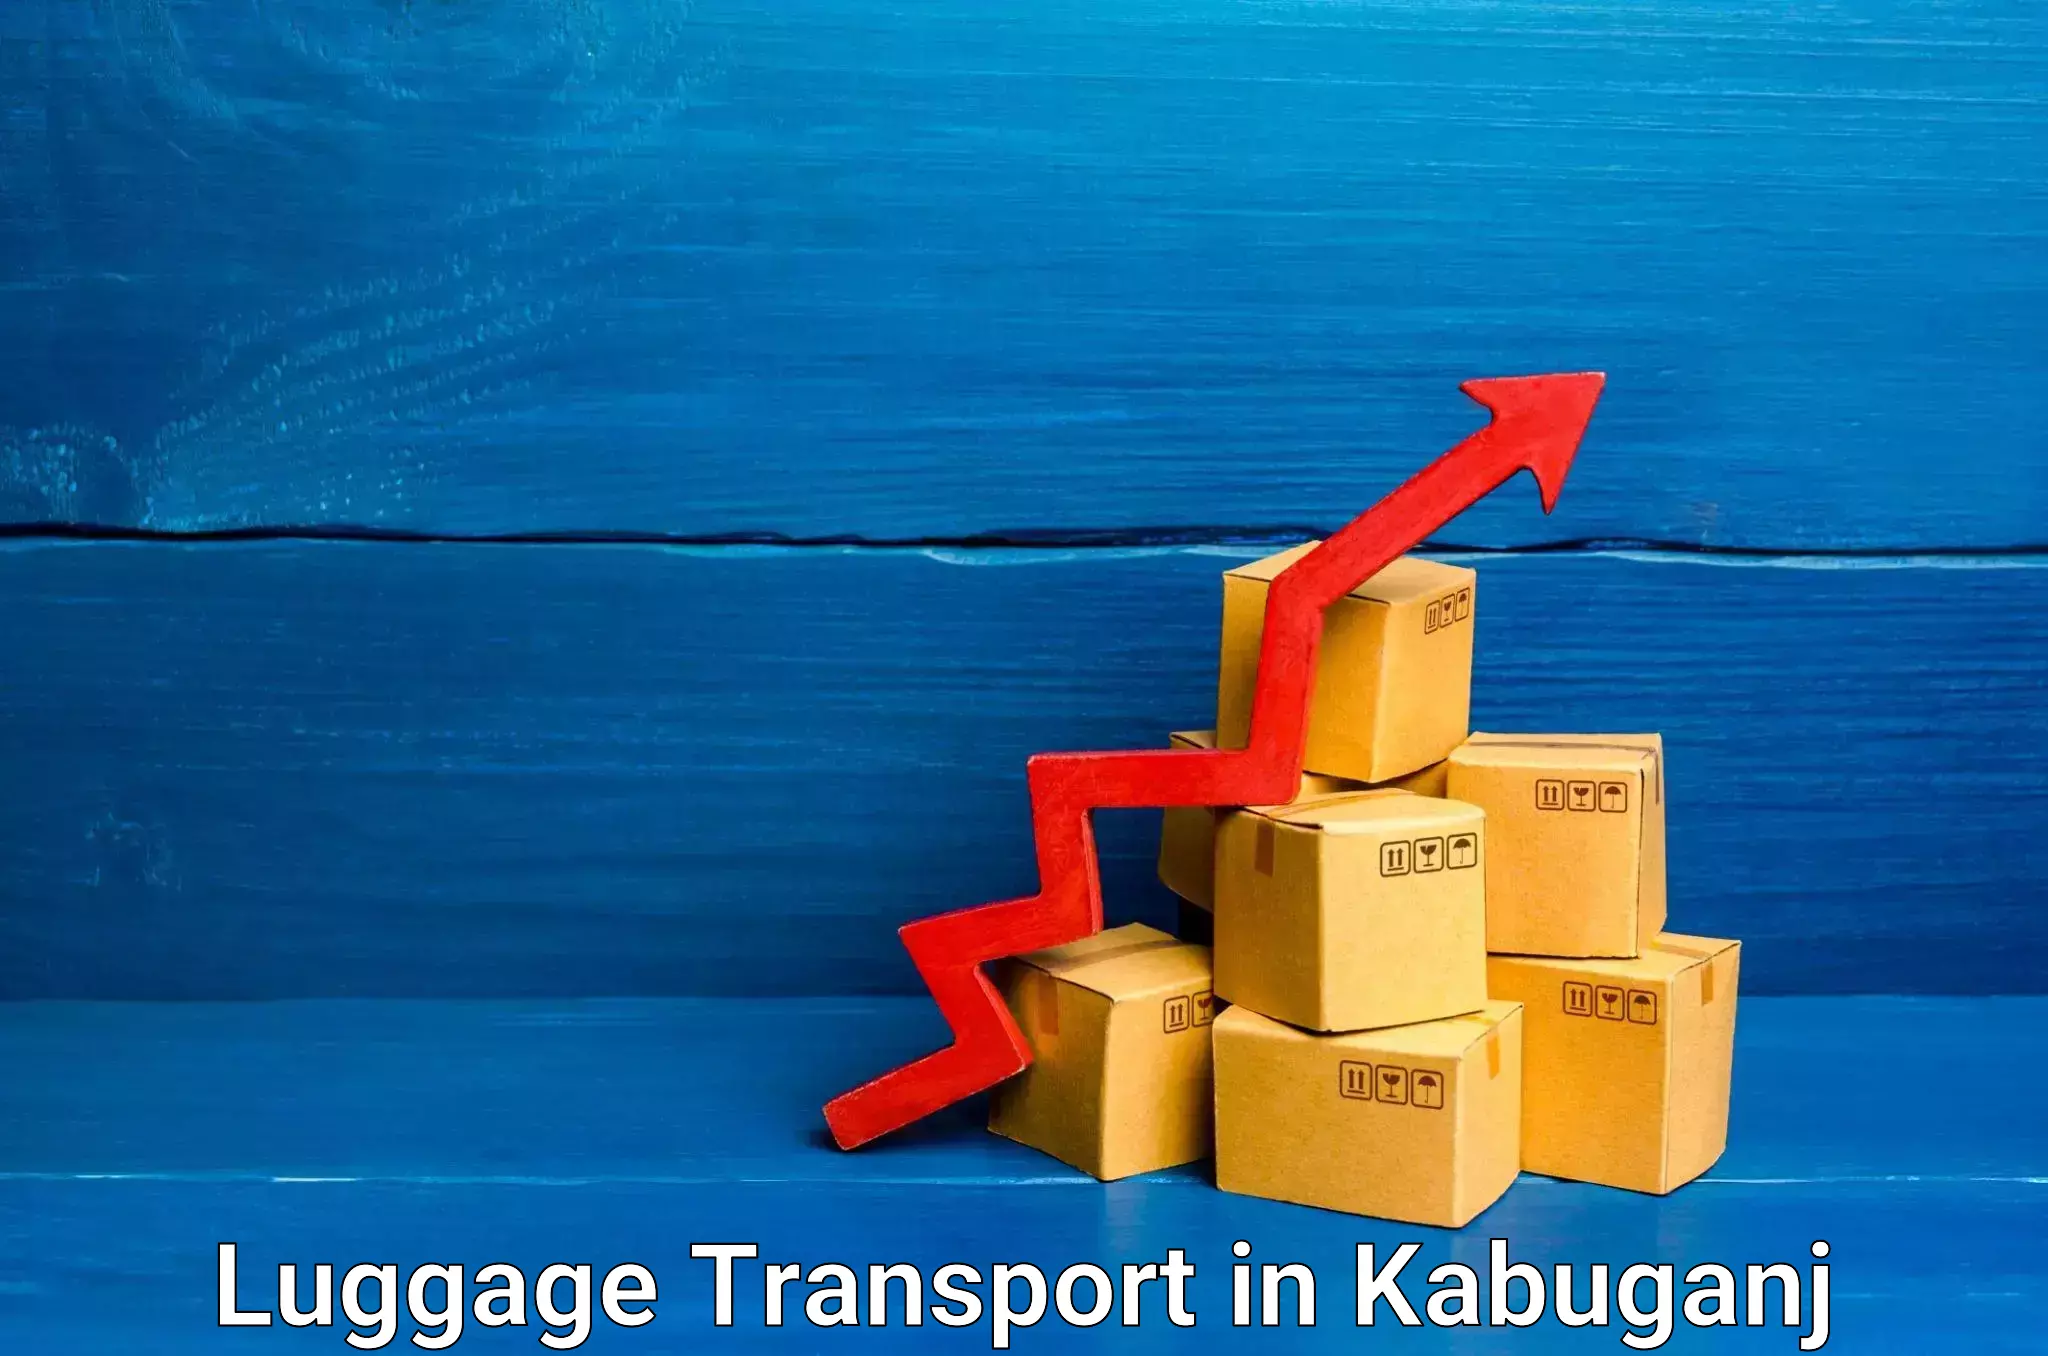 Luggage shipment strategy in Kabuganj